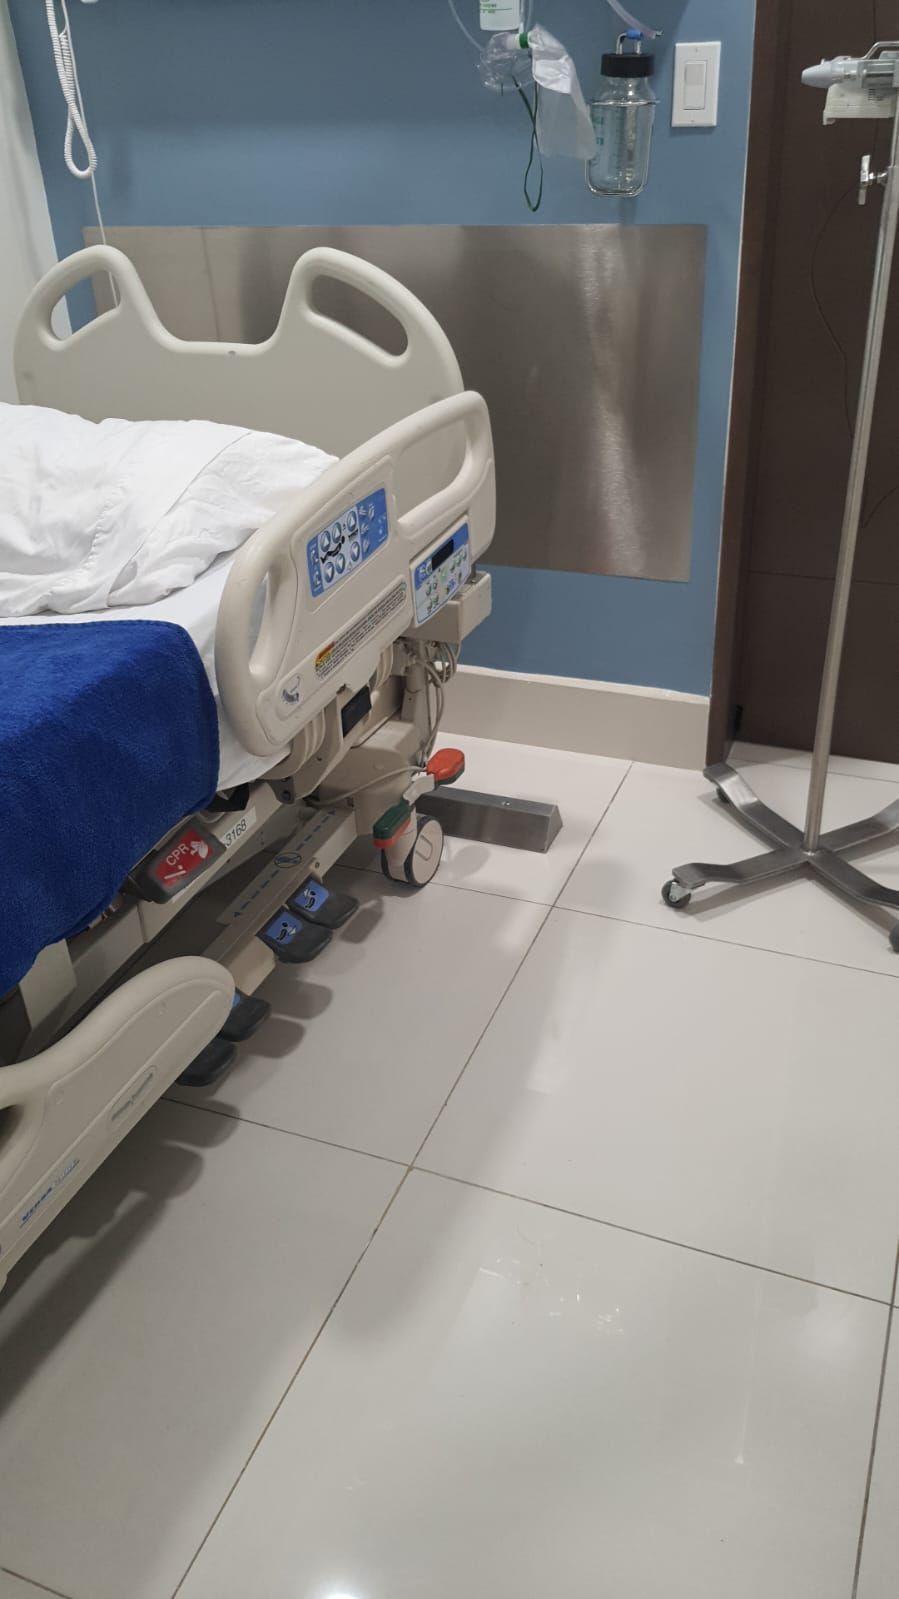 Una cama de hospital está sentada en el suelo de una habitación de hospital.